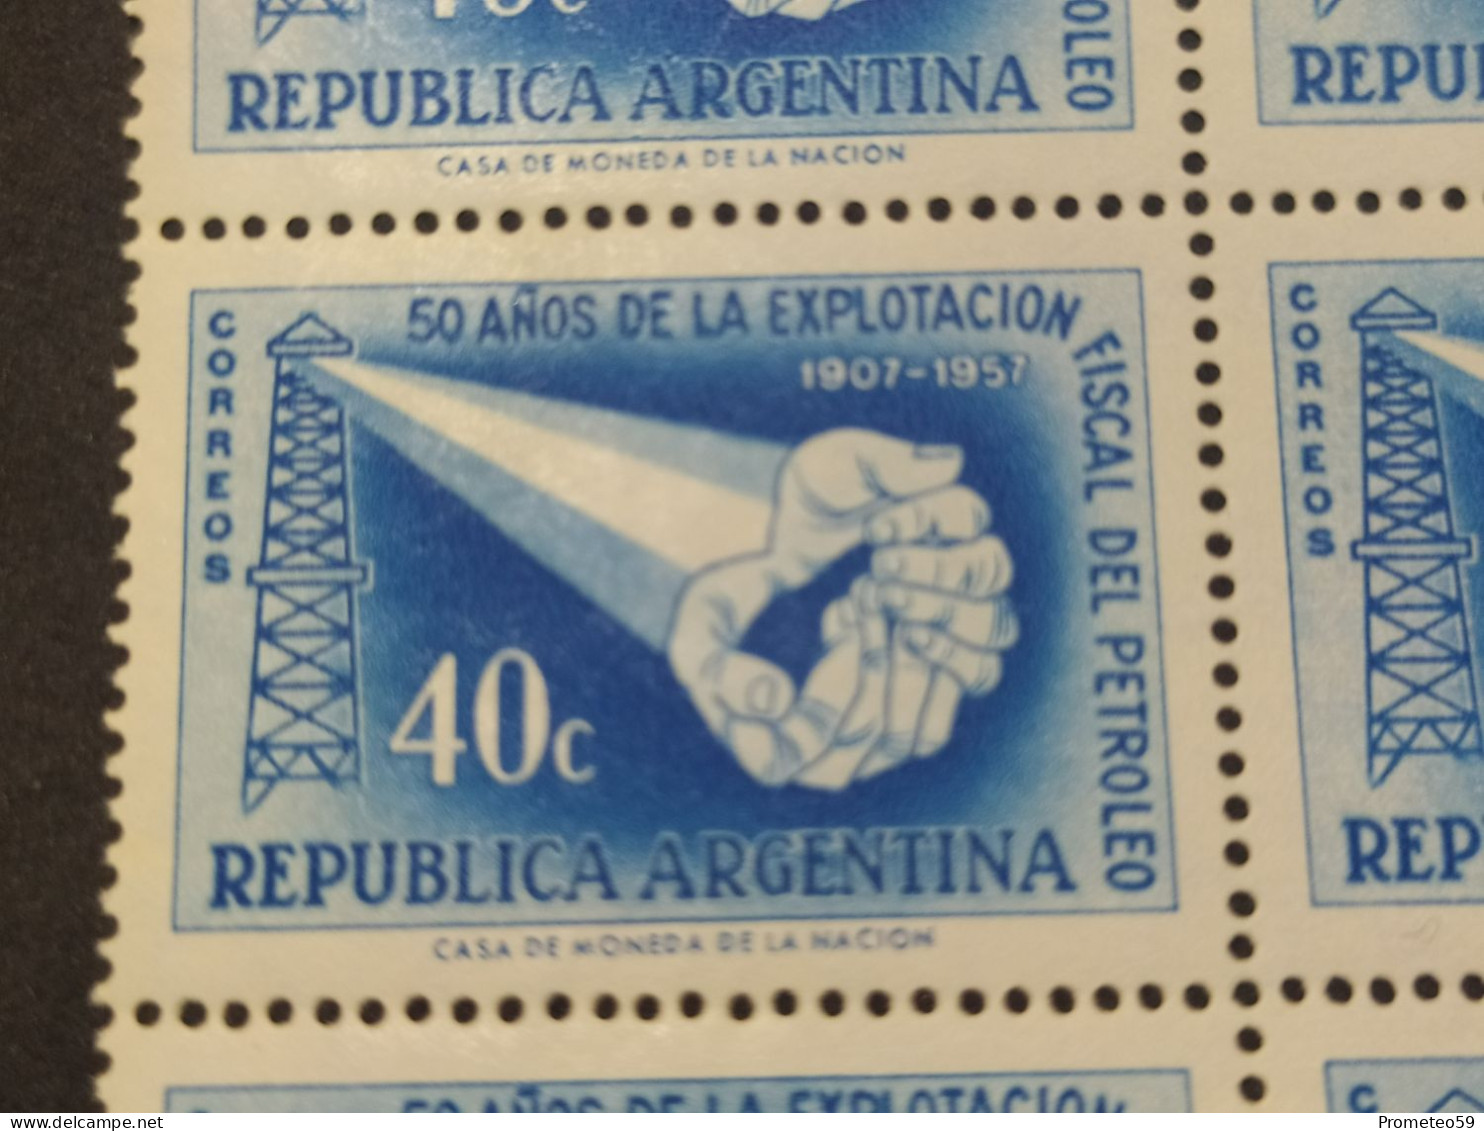 Fragmento Plancha De 12 Estampillas Argentinas Con Complemento – Valor: 40 Centavos – Año: 1957 - Sin Usar - Blocs-feuillets